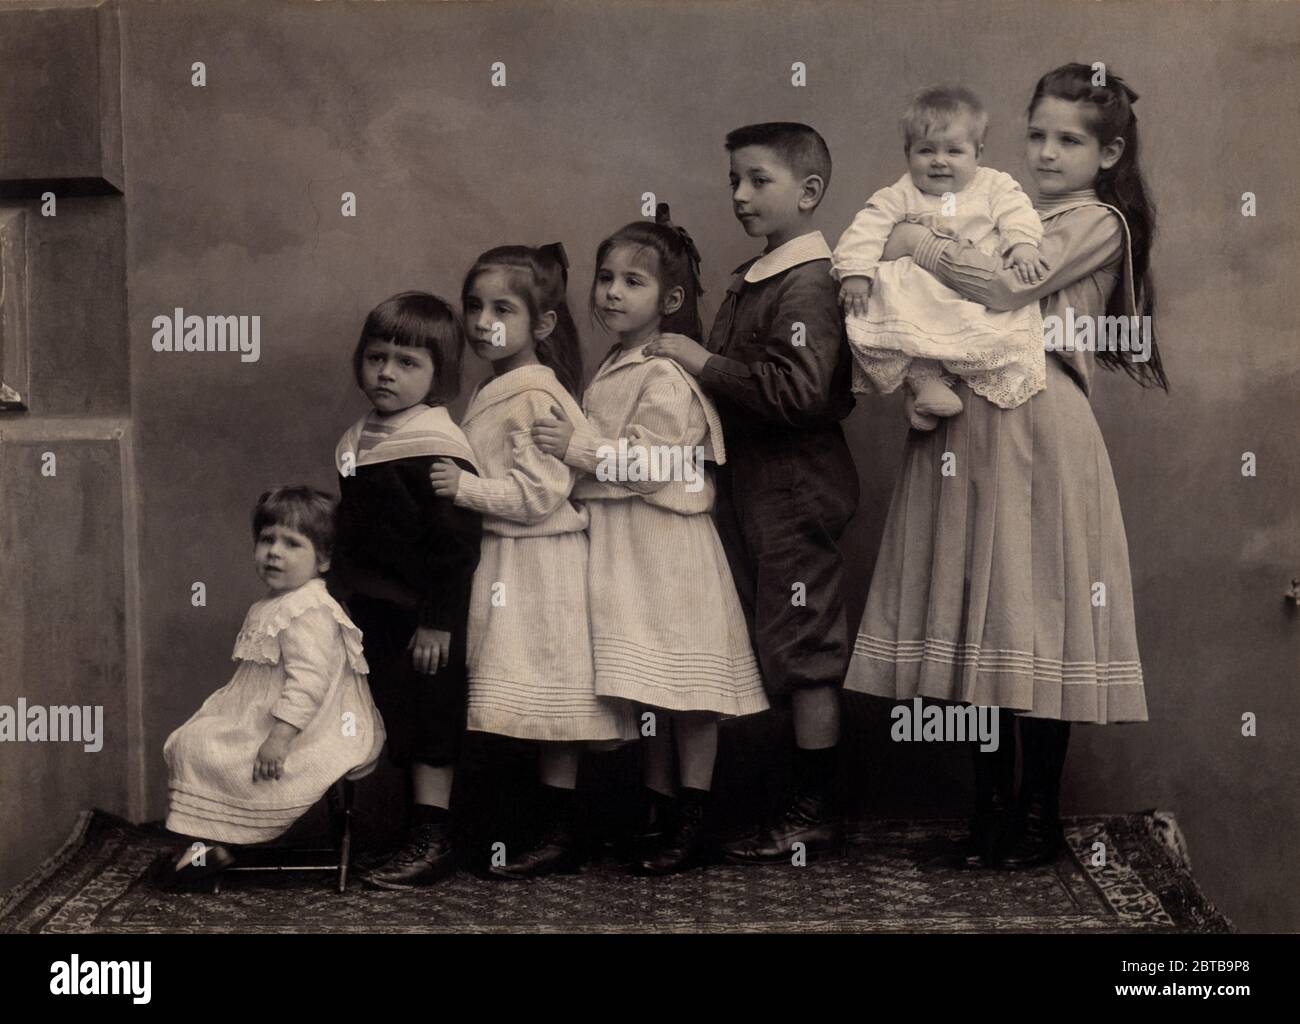 1910 c., GENOVA, ITALY : Seven children brothers and sisters . Photo by unknown photographer . - FAMILY - FAMIGLIA - SETTE FRATELLI - FRATELLO - BROTHER - SORELLE - SORELLA - esplosione demografica - incremento demografico - ITALIA - FOTO STORICHE - HISTORY PHOTOS - BAMBINO - BAMBINI - CHILDREN - CHILD - BABY - CHILDHOOD - INFANZIA - BABY  - INFANZIA - ANNI DIECI - '10 - 10's ----  Archivio GBB Stock Photo